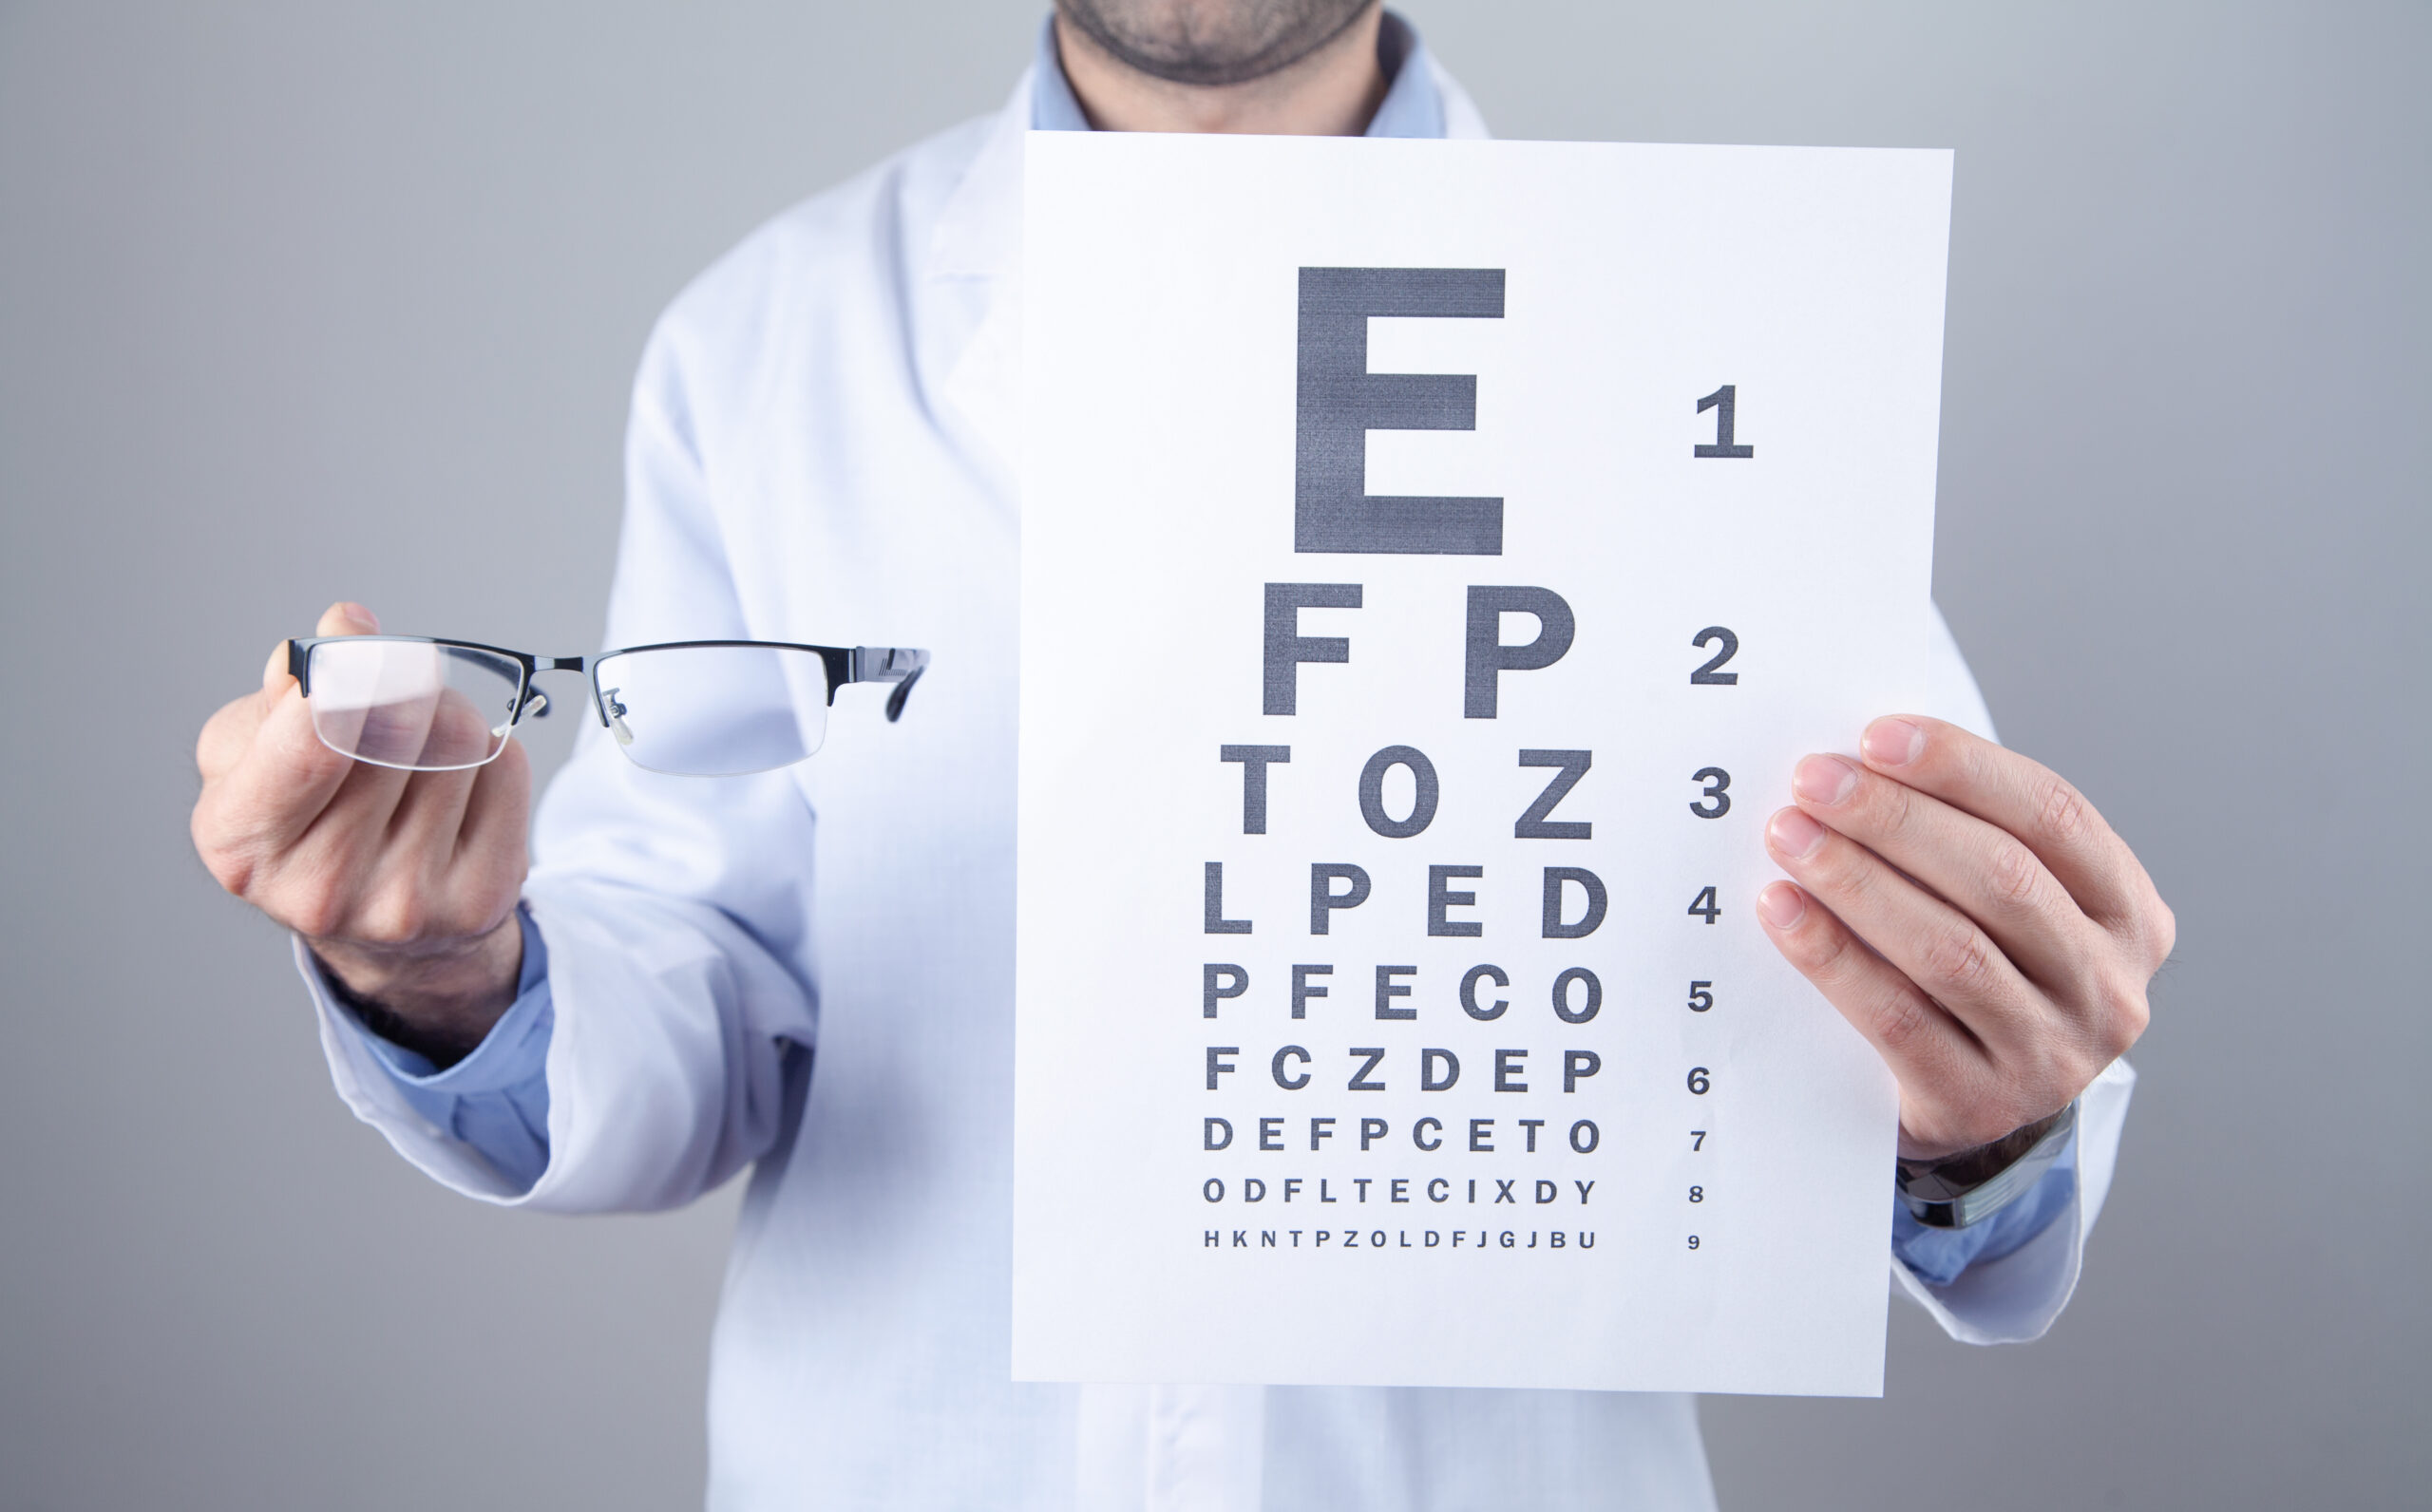 Someterse a una revisión de la vista anual permite detectar a tiempo problemas de la visión